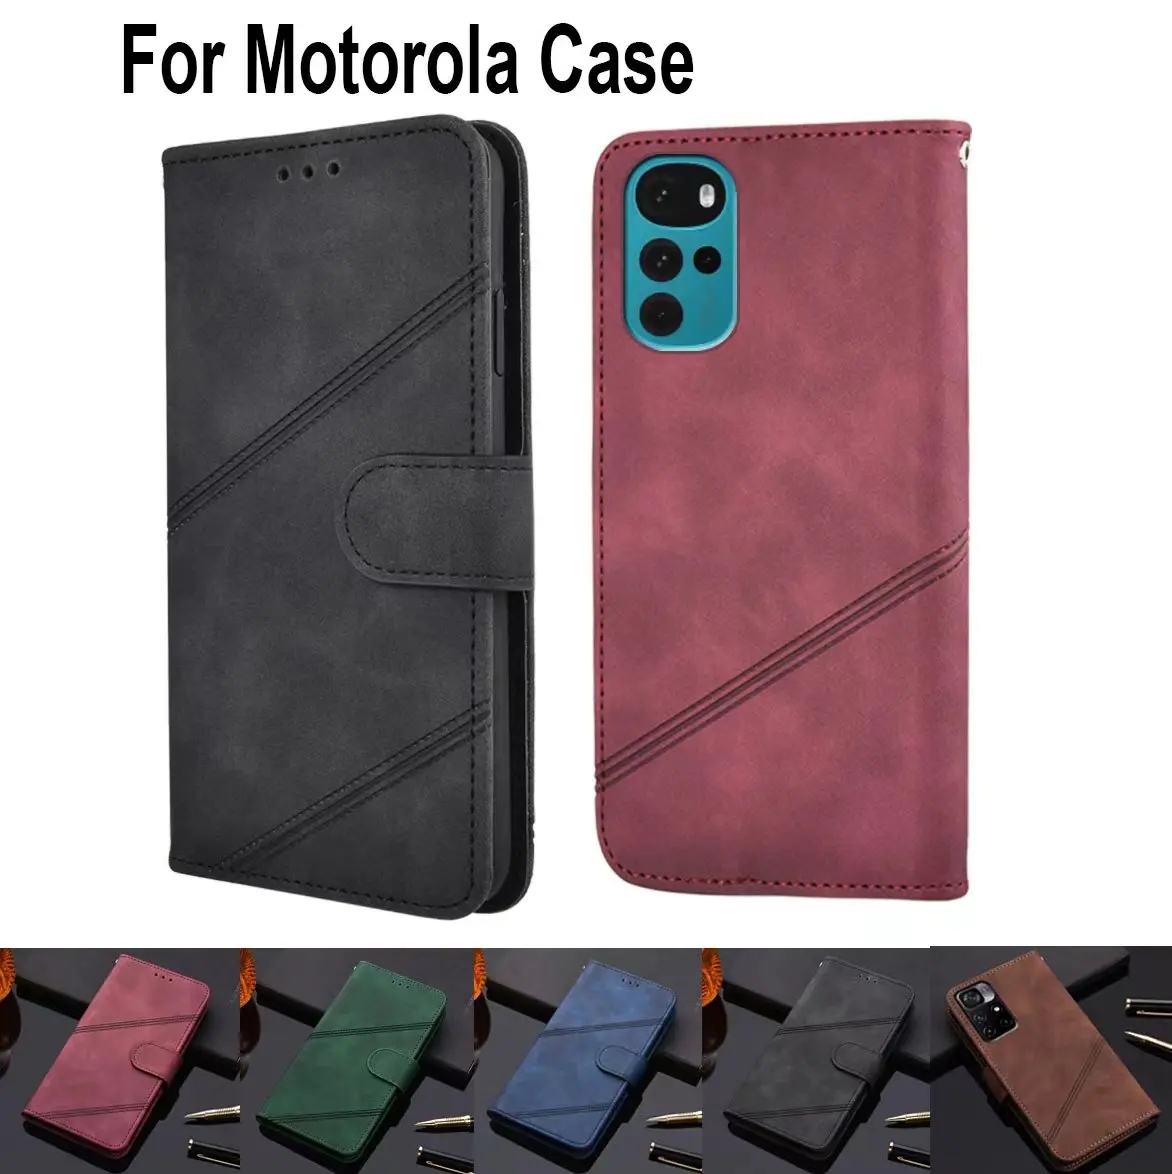 

Luxury Wallet Flip Cover For Motorola G3 G4 G5 E4 C G5s G6 E5 Plus G4 Z2 G6 E5 Play G7 Play Power (EU Phone Case Leather Shell